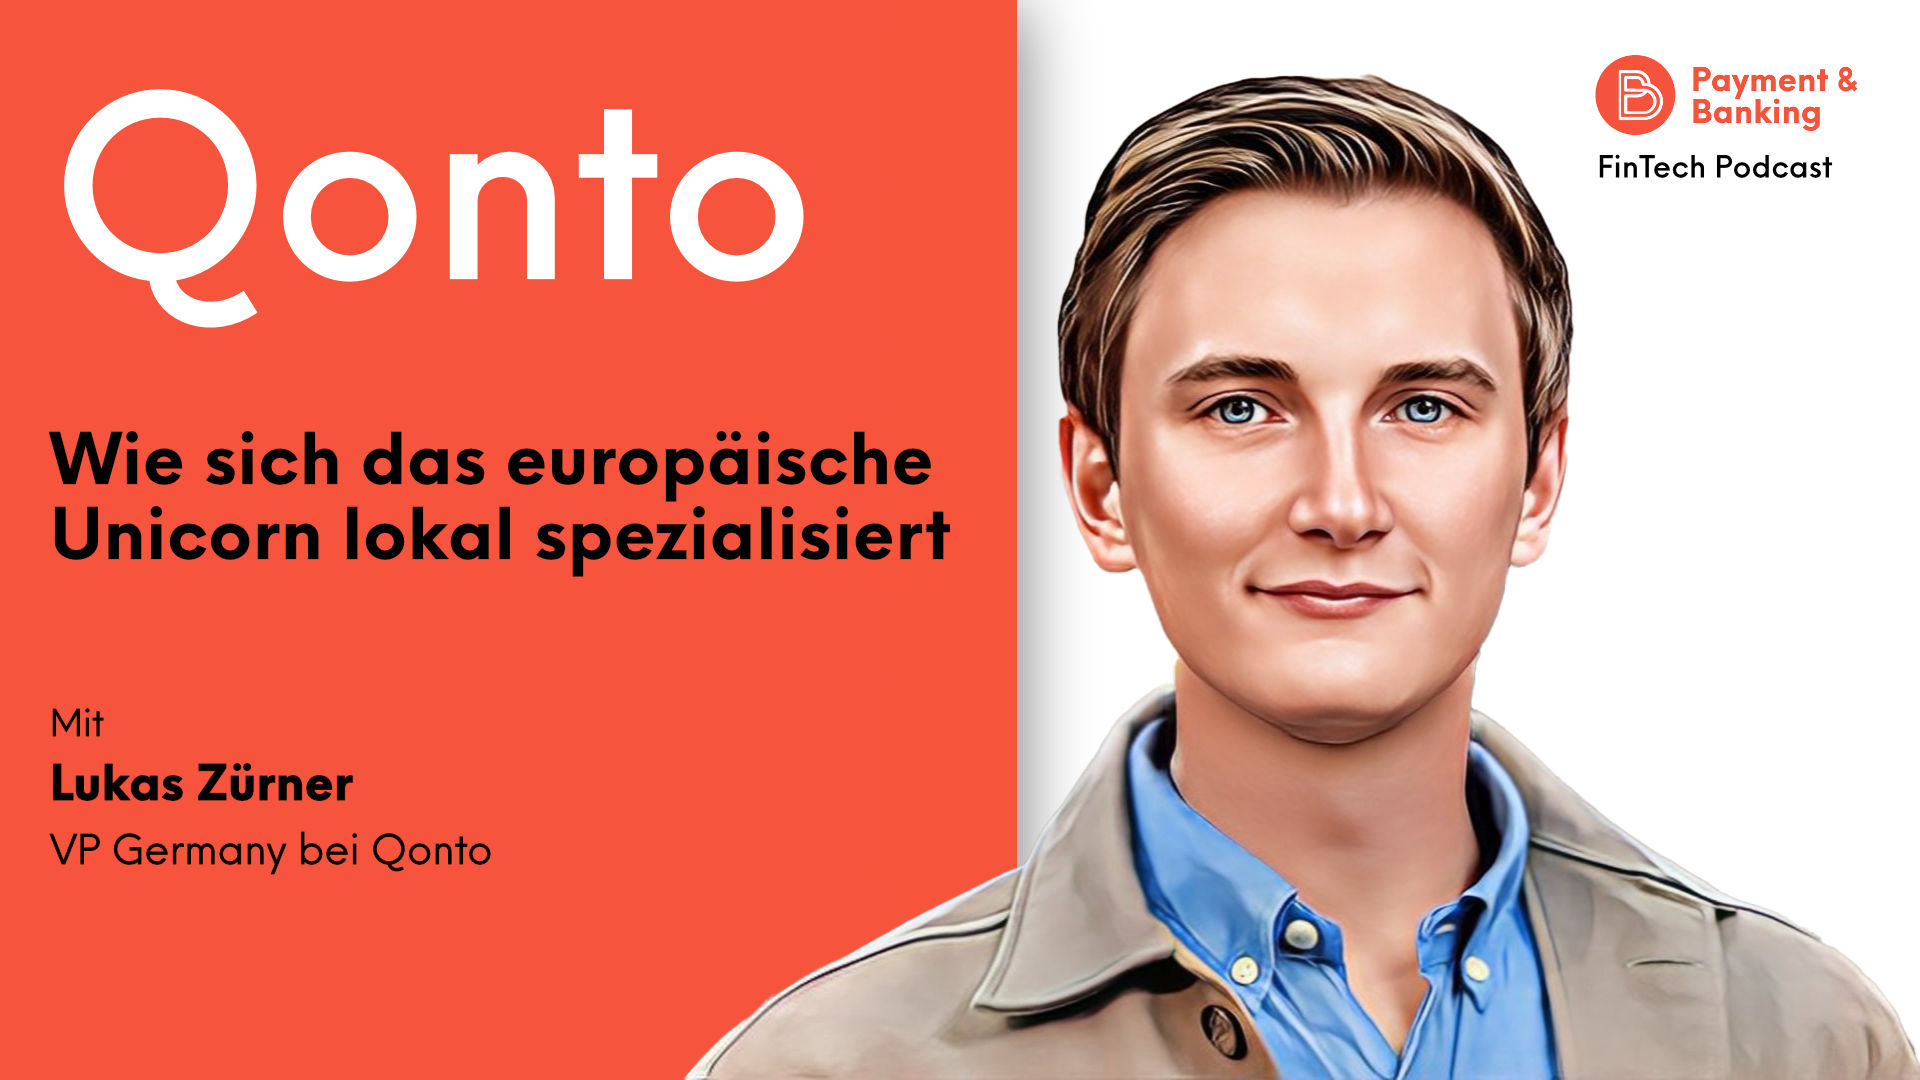 Lukas Zörner (VP Germany bei Qonto) spricht über die Evolution aus Penta heraus, die Expansionspläne und darüber, wie sich Qonto auf lokale europäische Märkte spezialisiert.